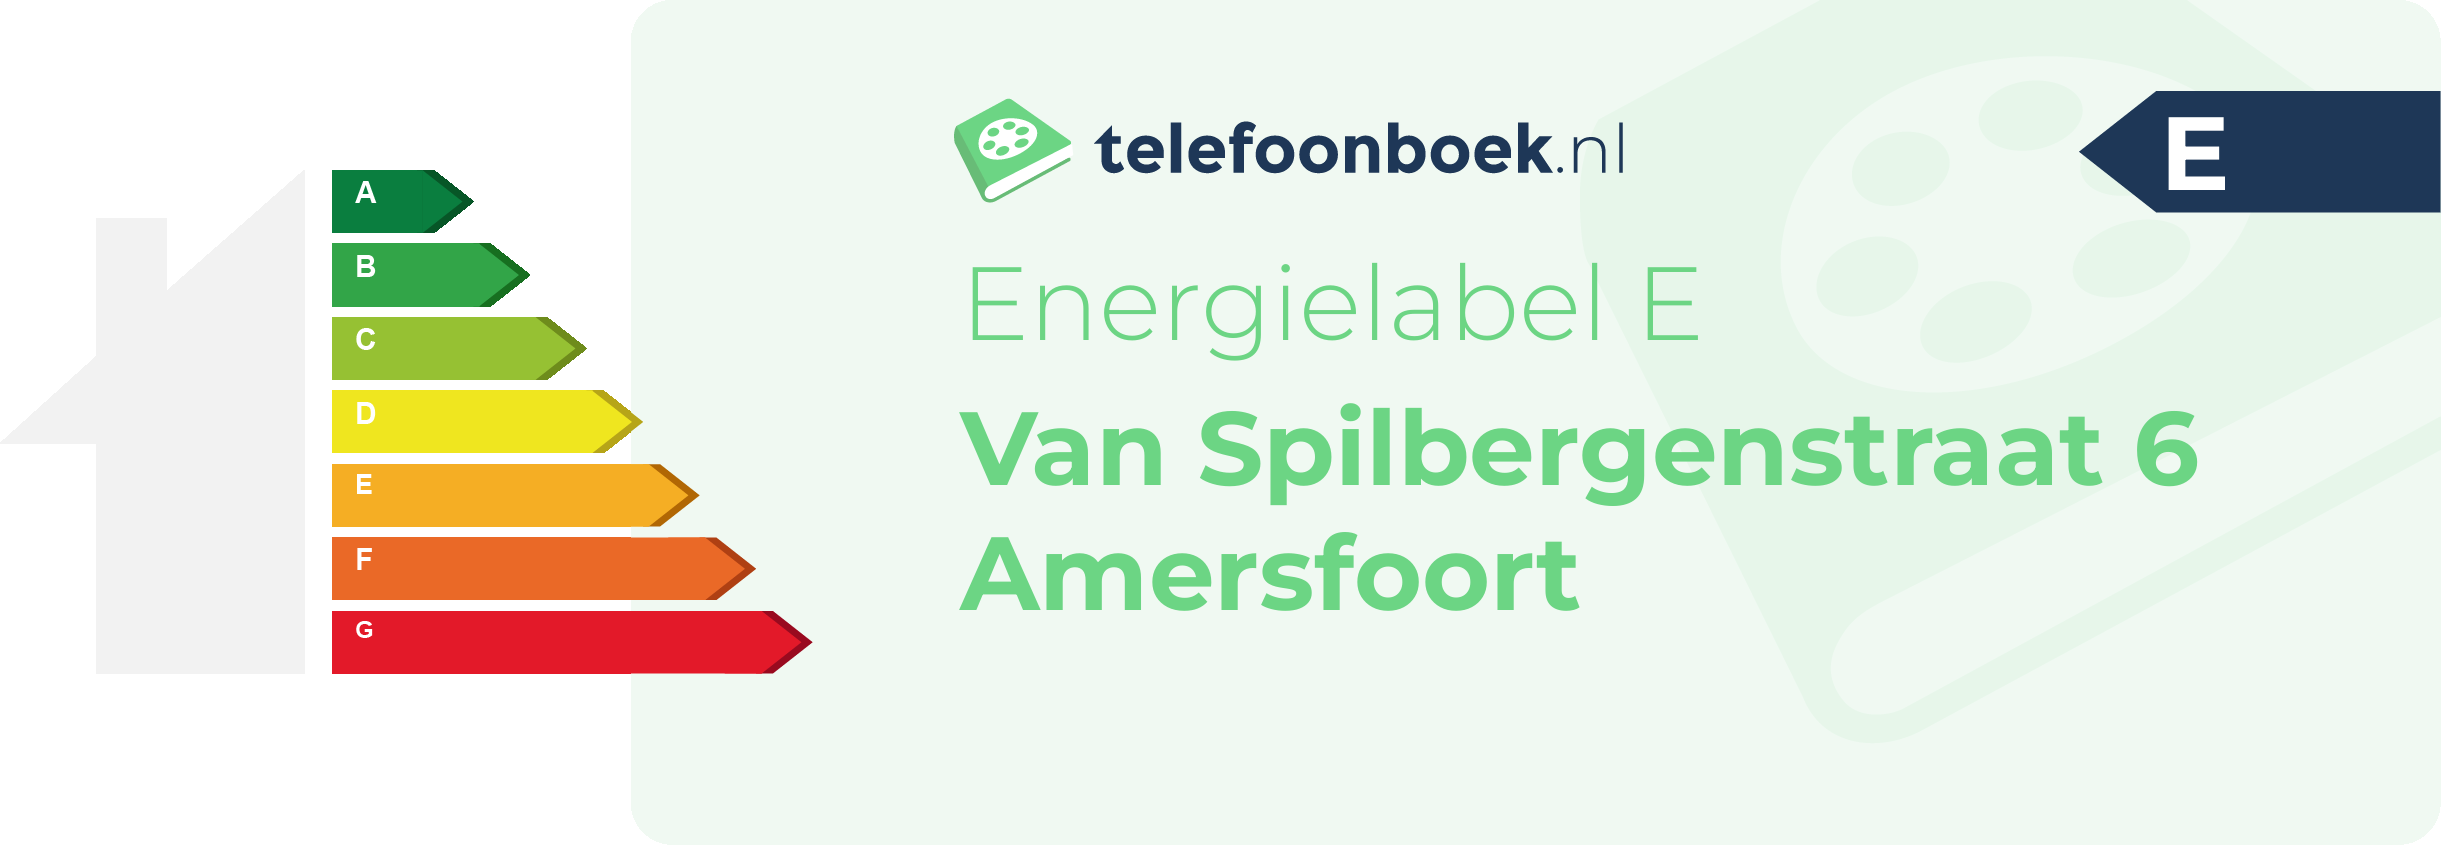 Energielabel Van Spilbergenstraat 6 Amersfoort